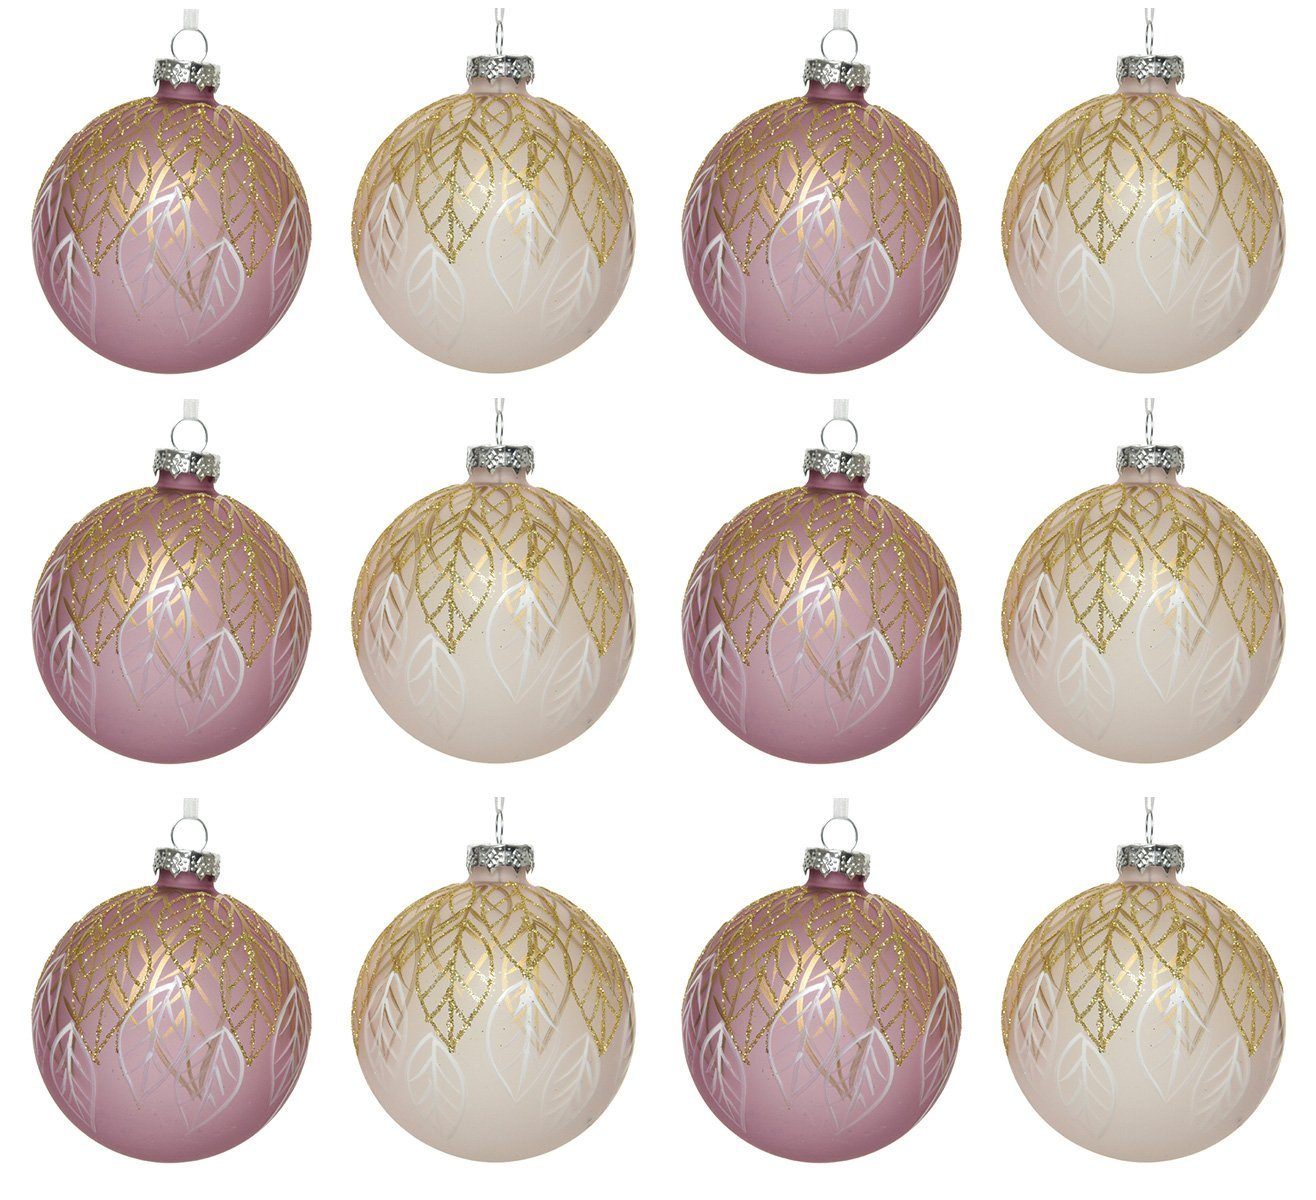 Decoris season decorations Weihnachtsbaumkugel, Weihnachtskugeln Glas 8cm mit Blätter Motiv 12er Set rosa / altrosa